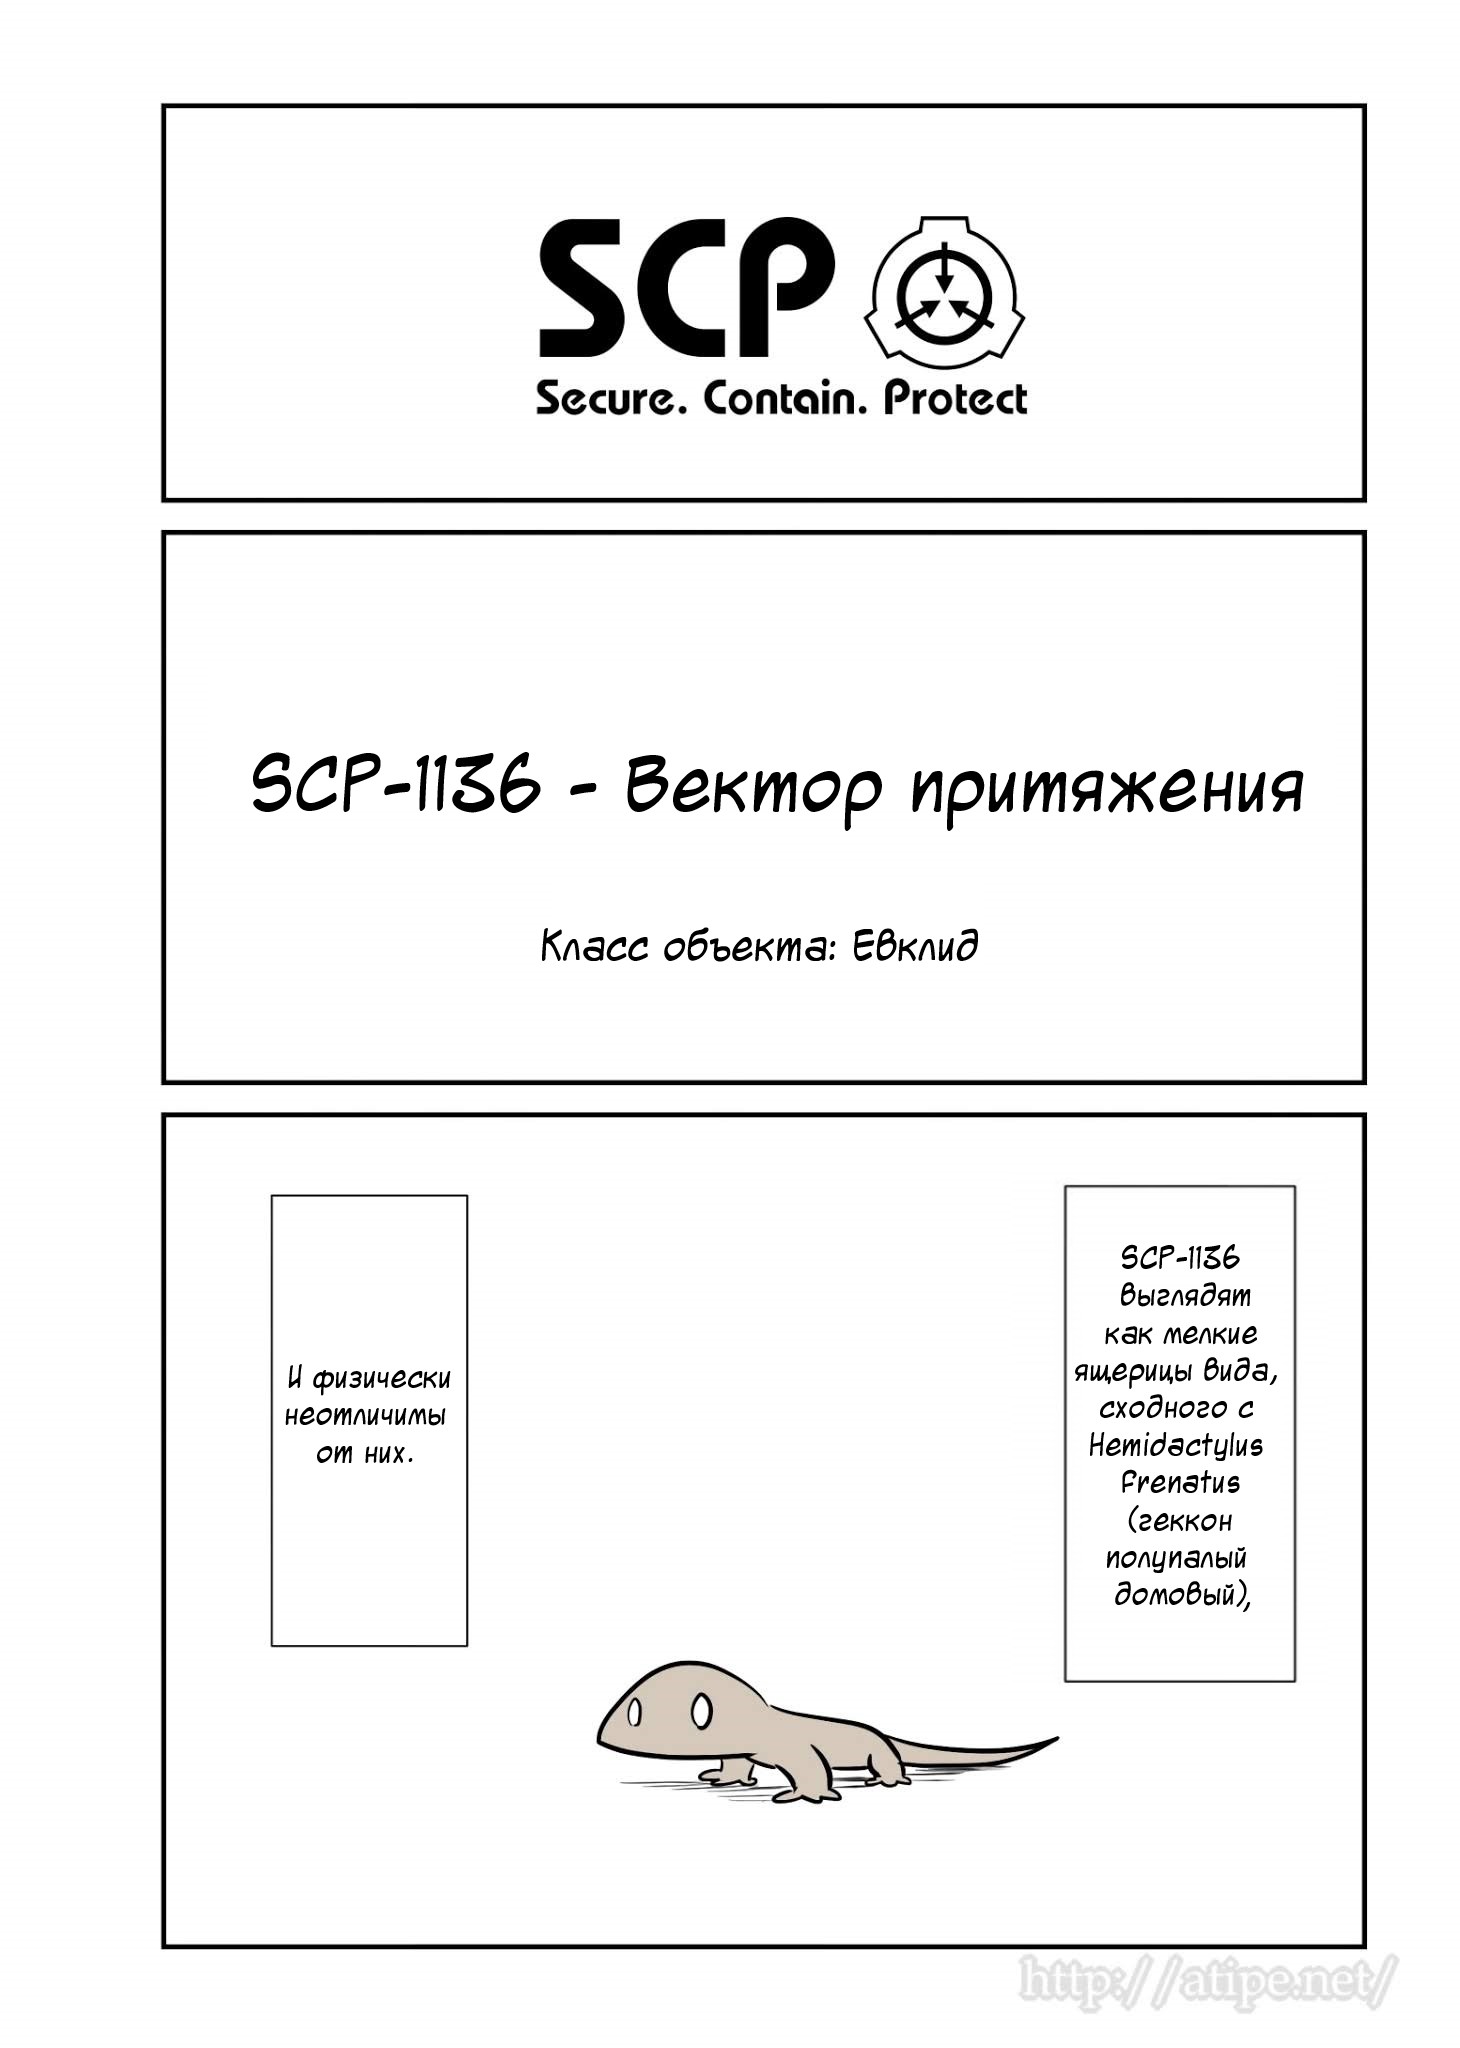 Упрощенный SCP 1 - 60 SCP-1136